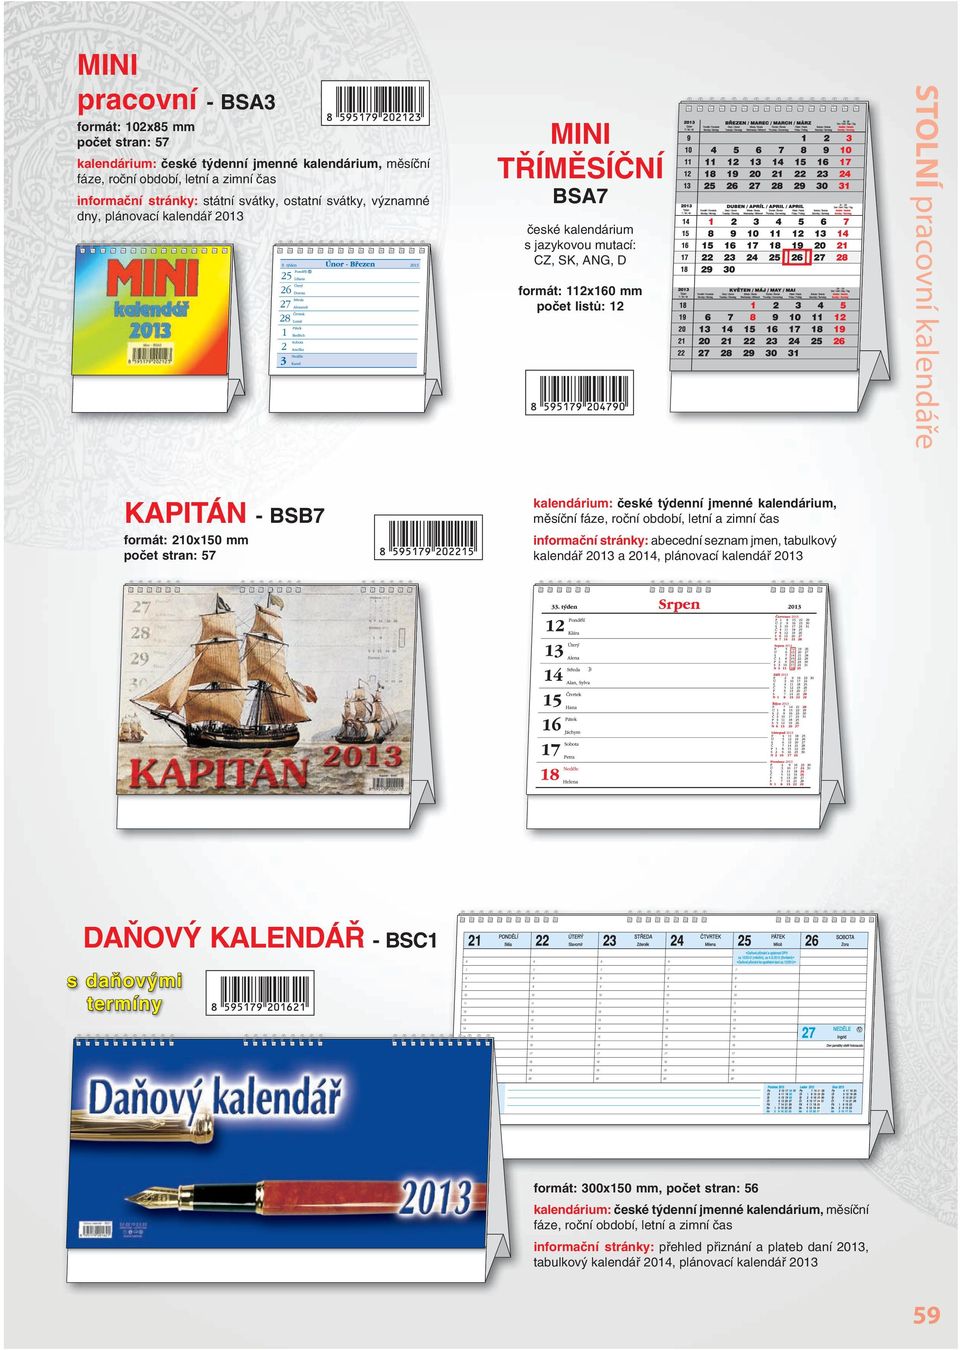 210x150 mm informační stránky: abecední seznam jmen, tabulkový kalendář 2013 a 2014, plánovací kalendář 2013 DAŇOVÝ KALENDÁŘ - BSC1 s daňovými termíny formát: 300x150